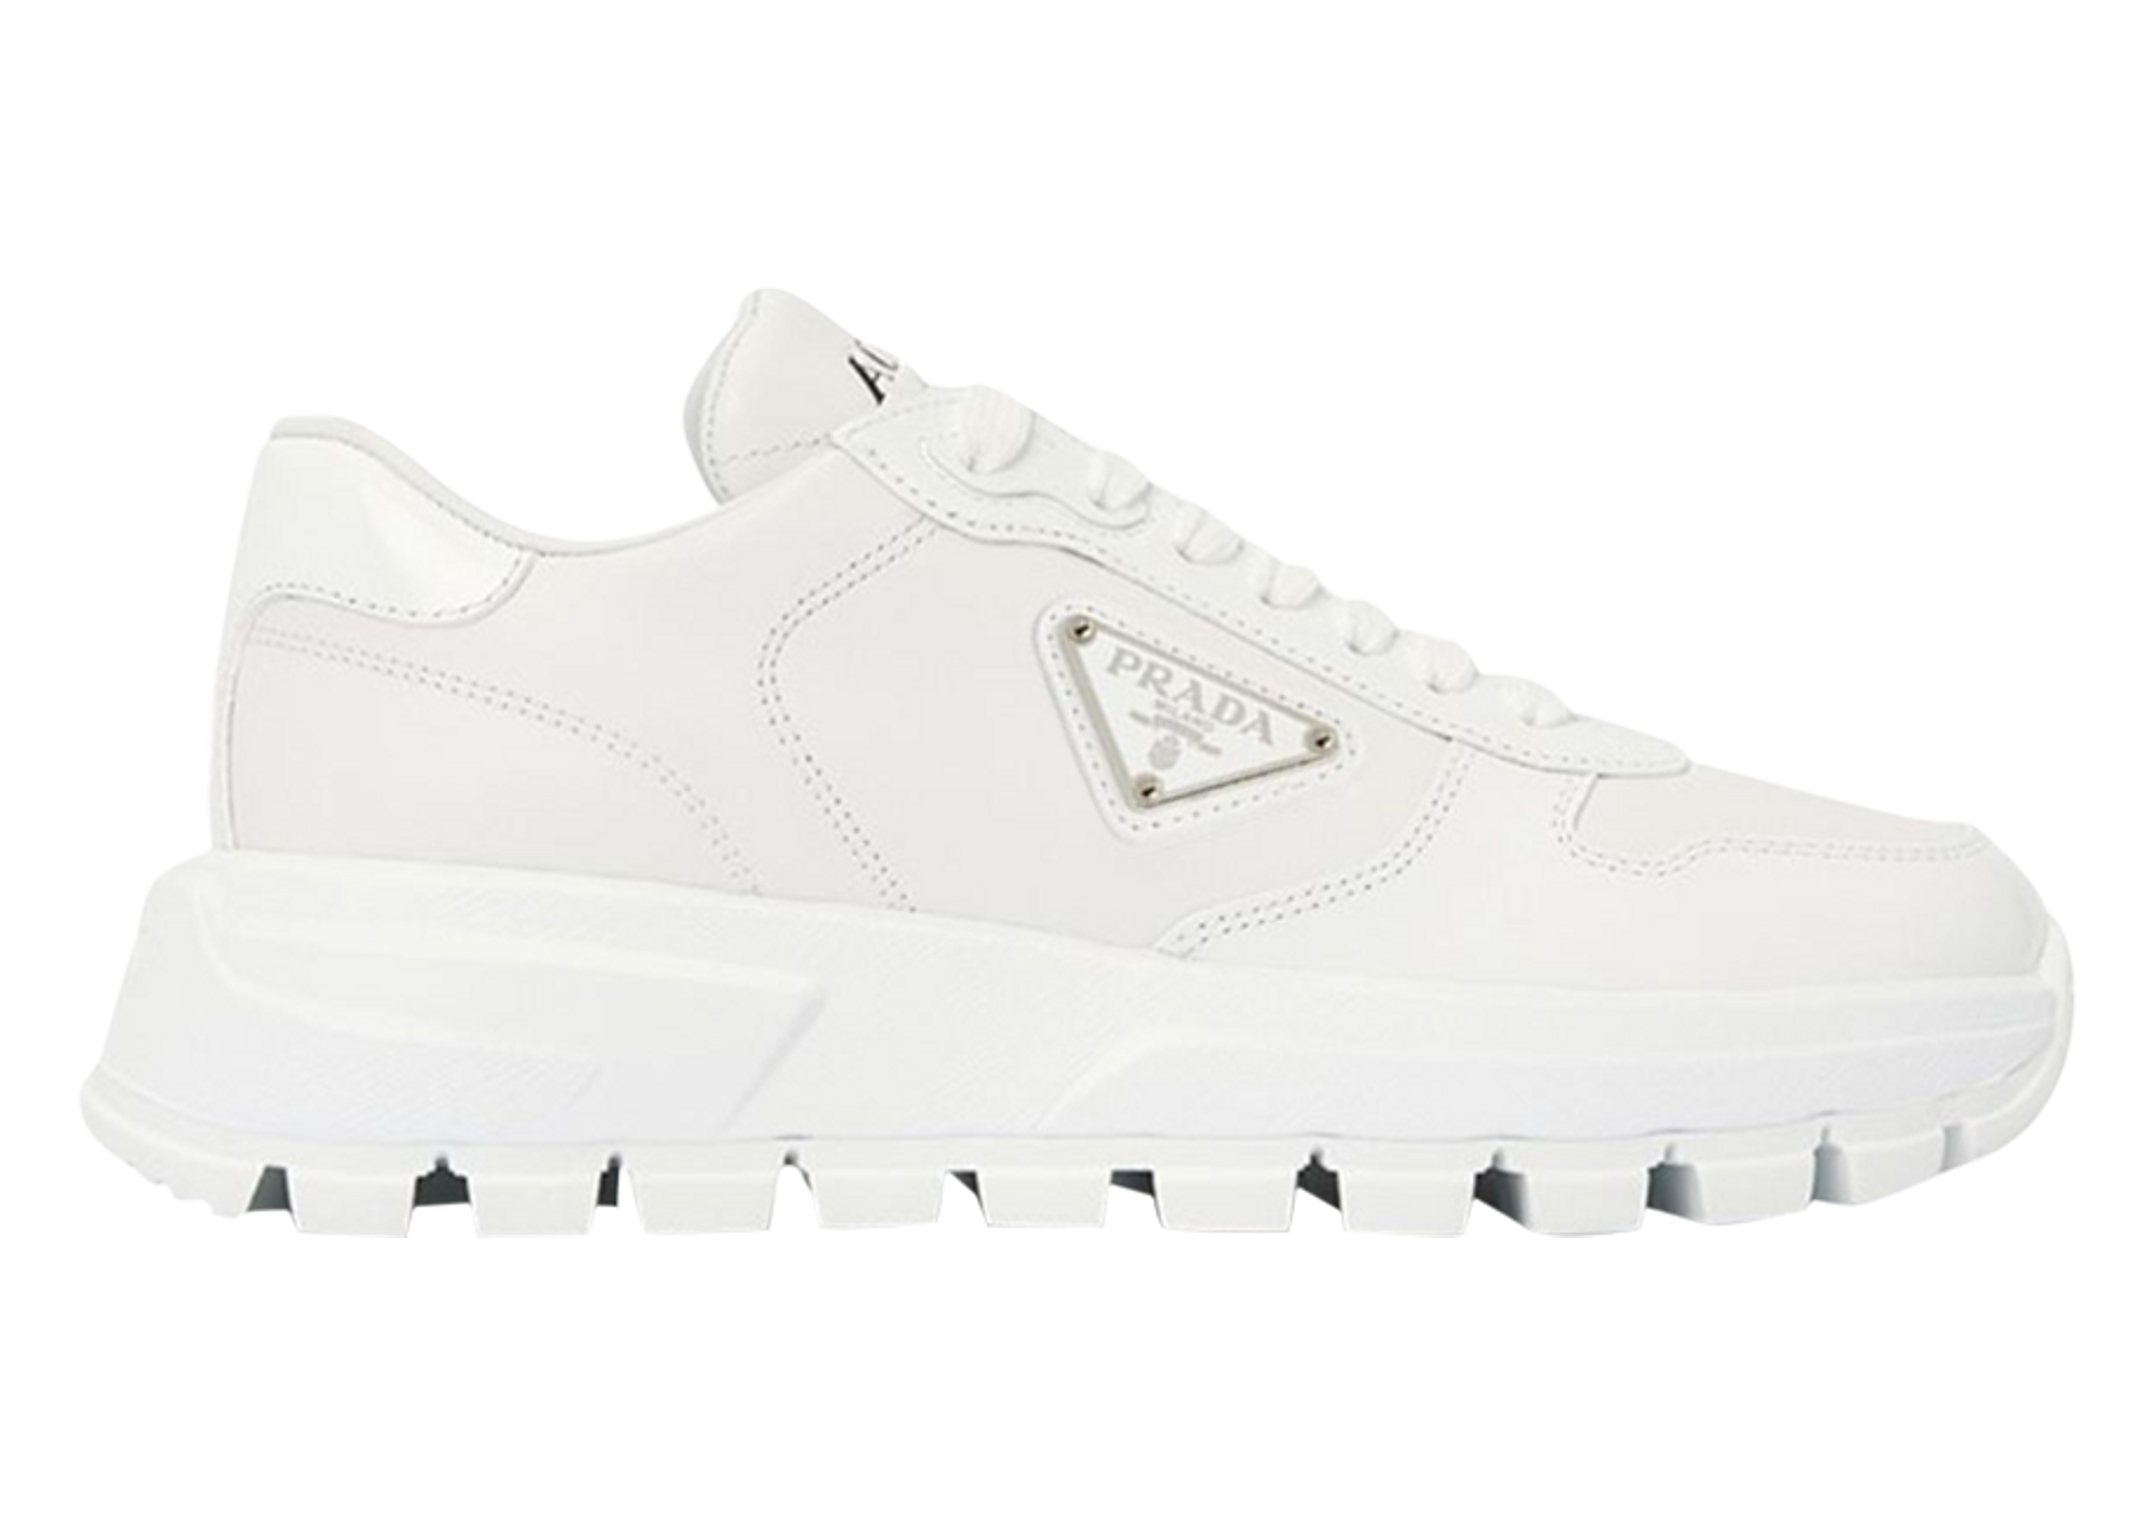 Prada Triangle Logo Leather Sneakers Triple White Men's 